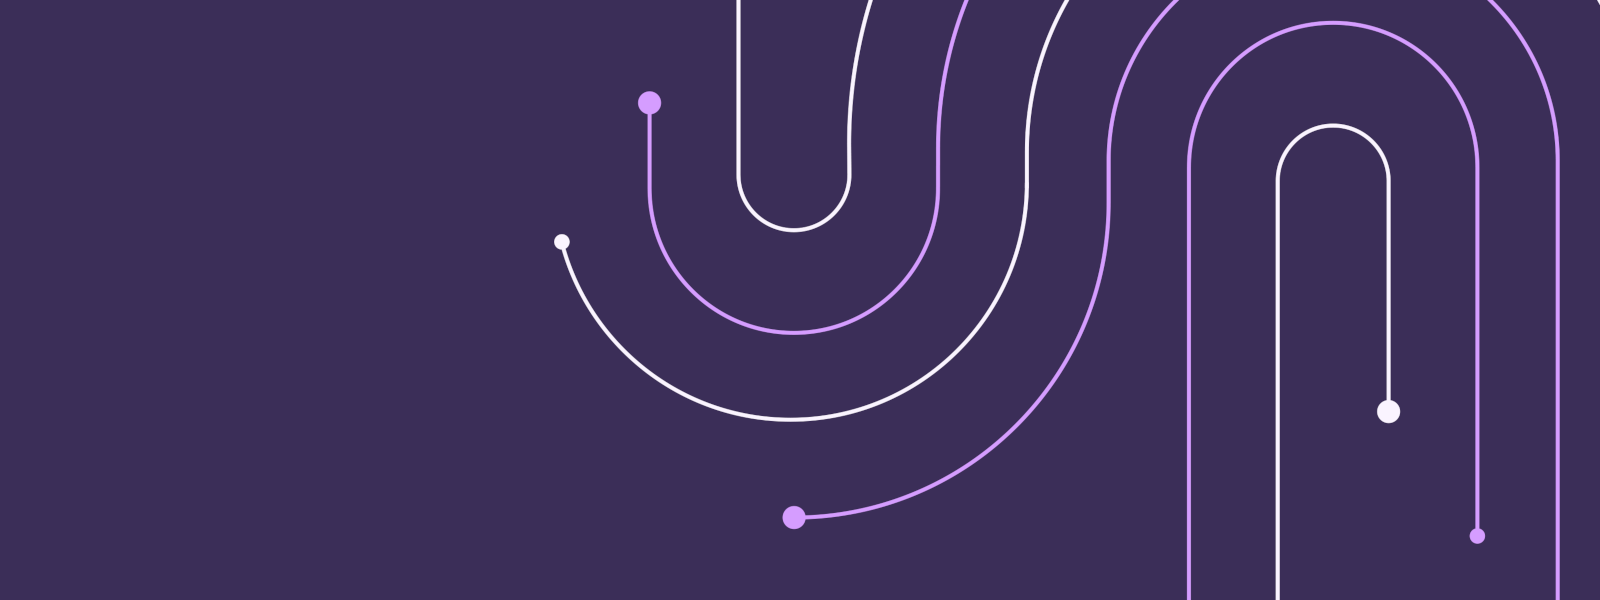 Ilustración de líneas sólidas formando curvas en forma sobre un fondo púrpura